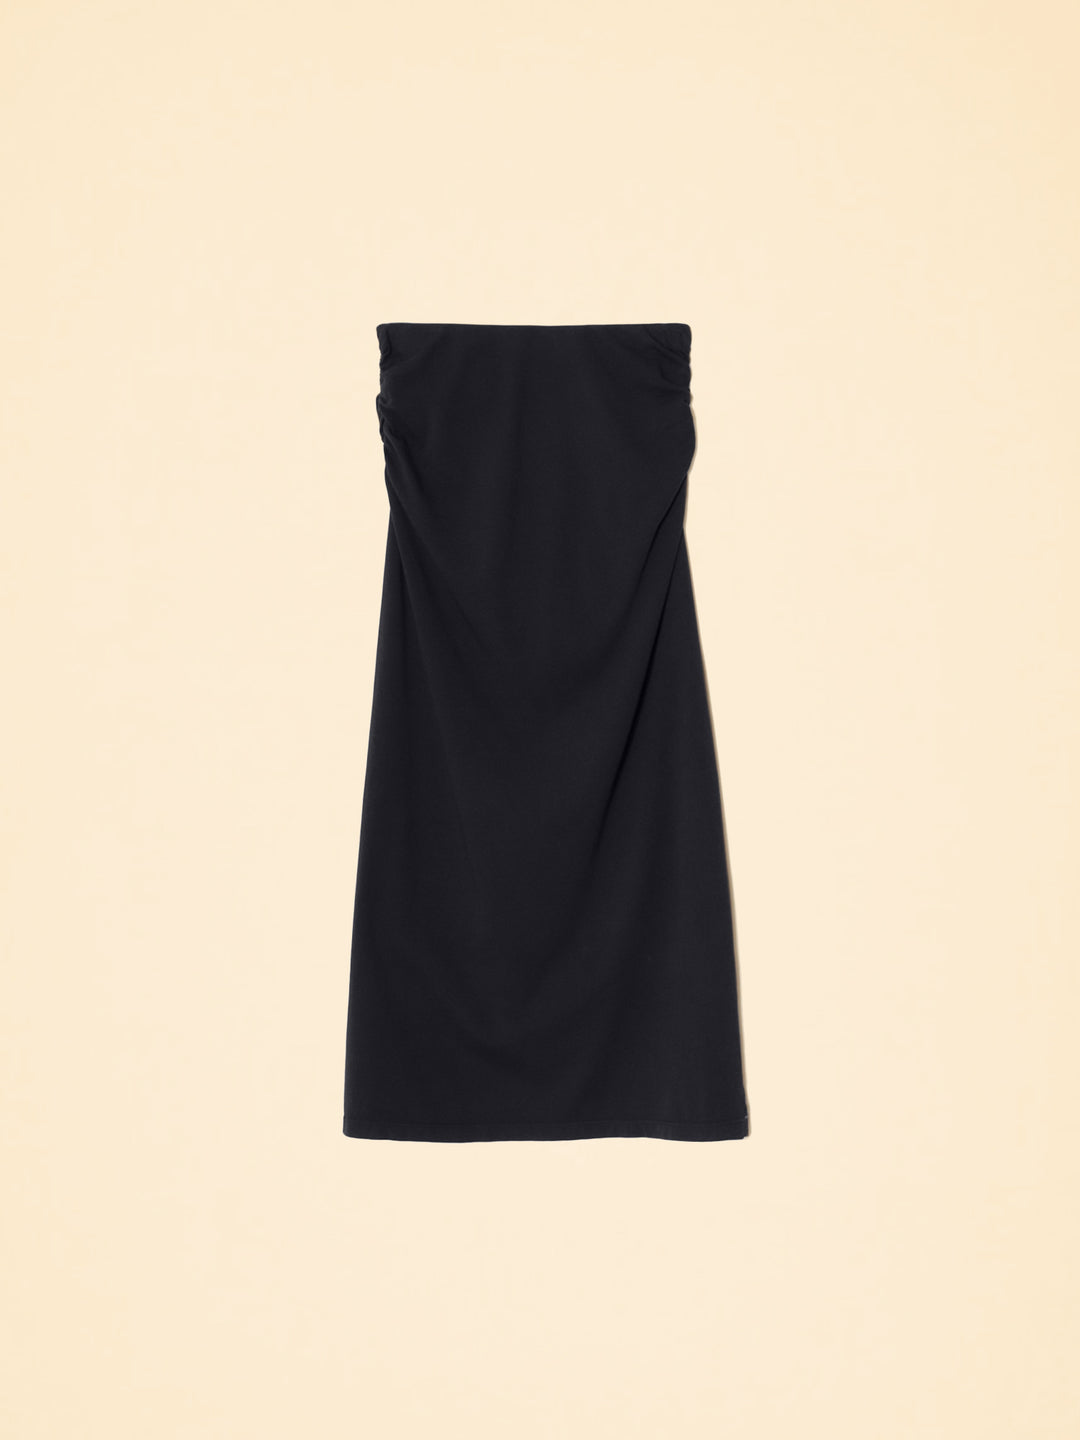 Xirena - Lenny Skirt in Black